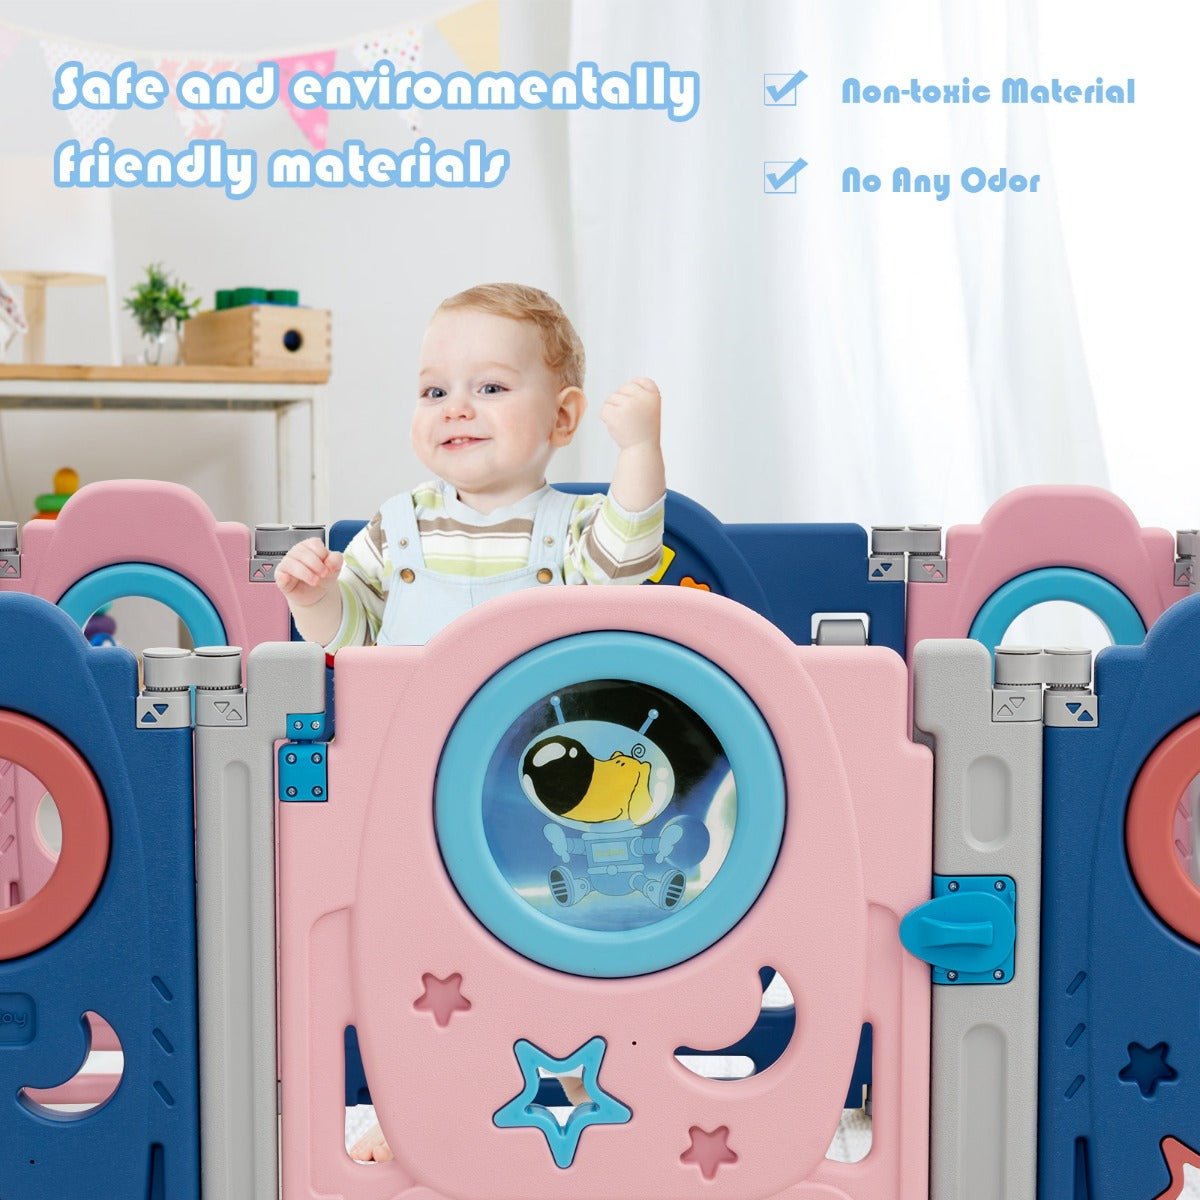 Versatile Living Room Baby Playpen with Lockable Door for Safe Play